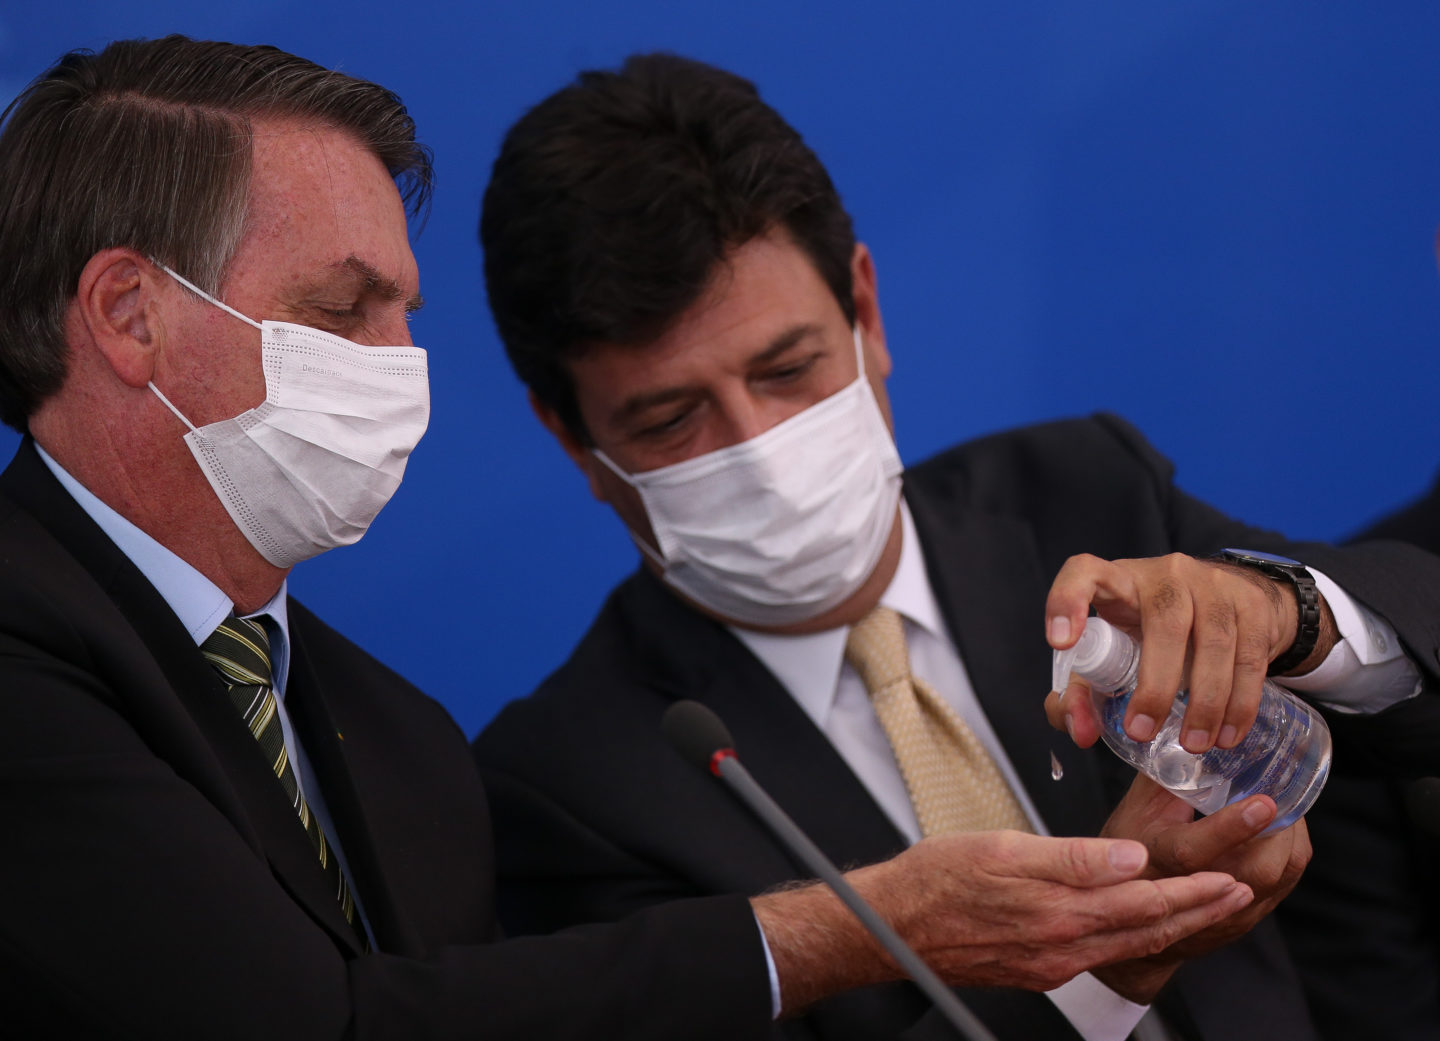 Ministro Luiz Henrique Mandetta (Saúde) aplica álcool em gel na mão do presidente Bolsonaro